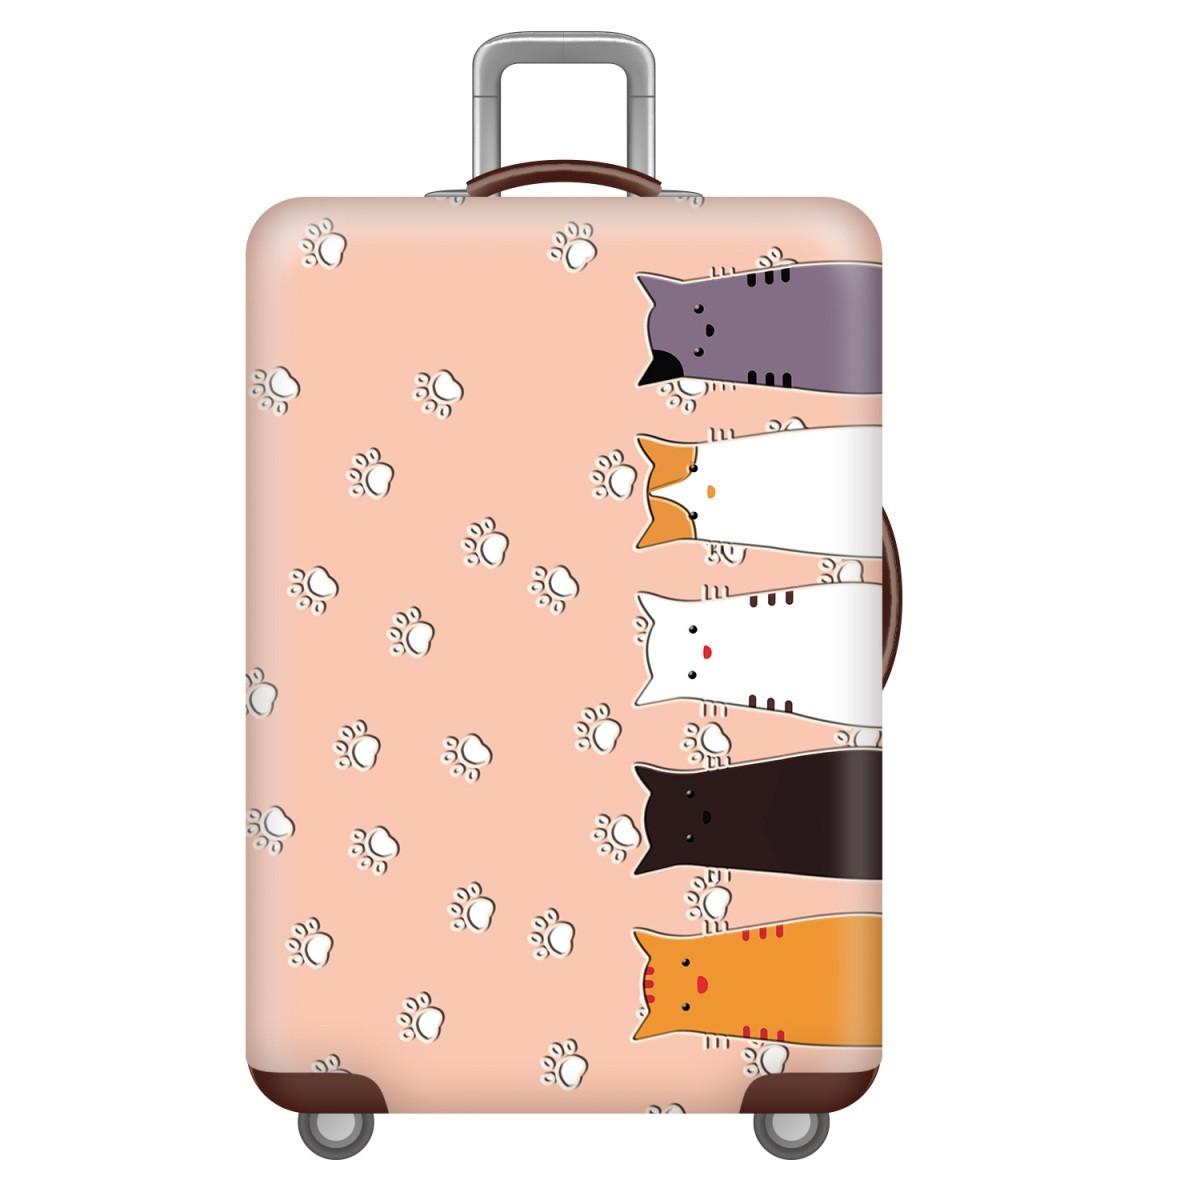 スーツケースカバー かわいい5匹の猫 肉球 イラスト プリント (M)_画像1